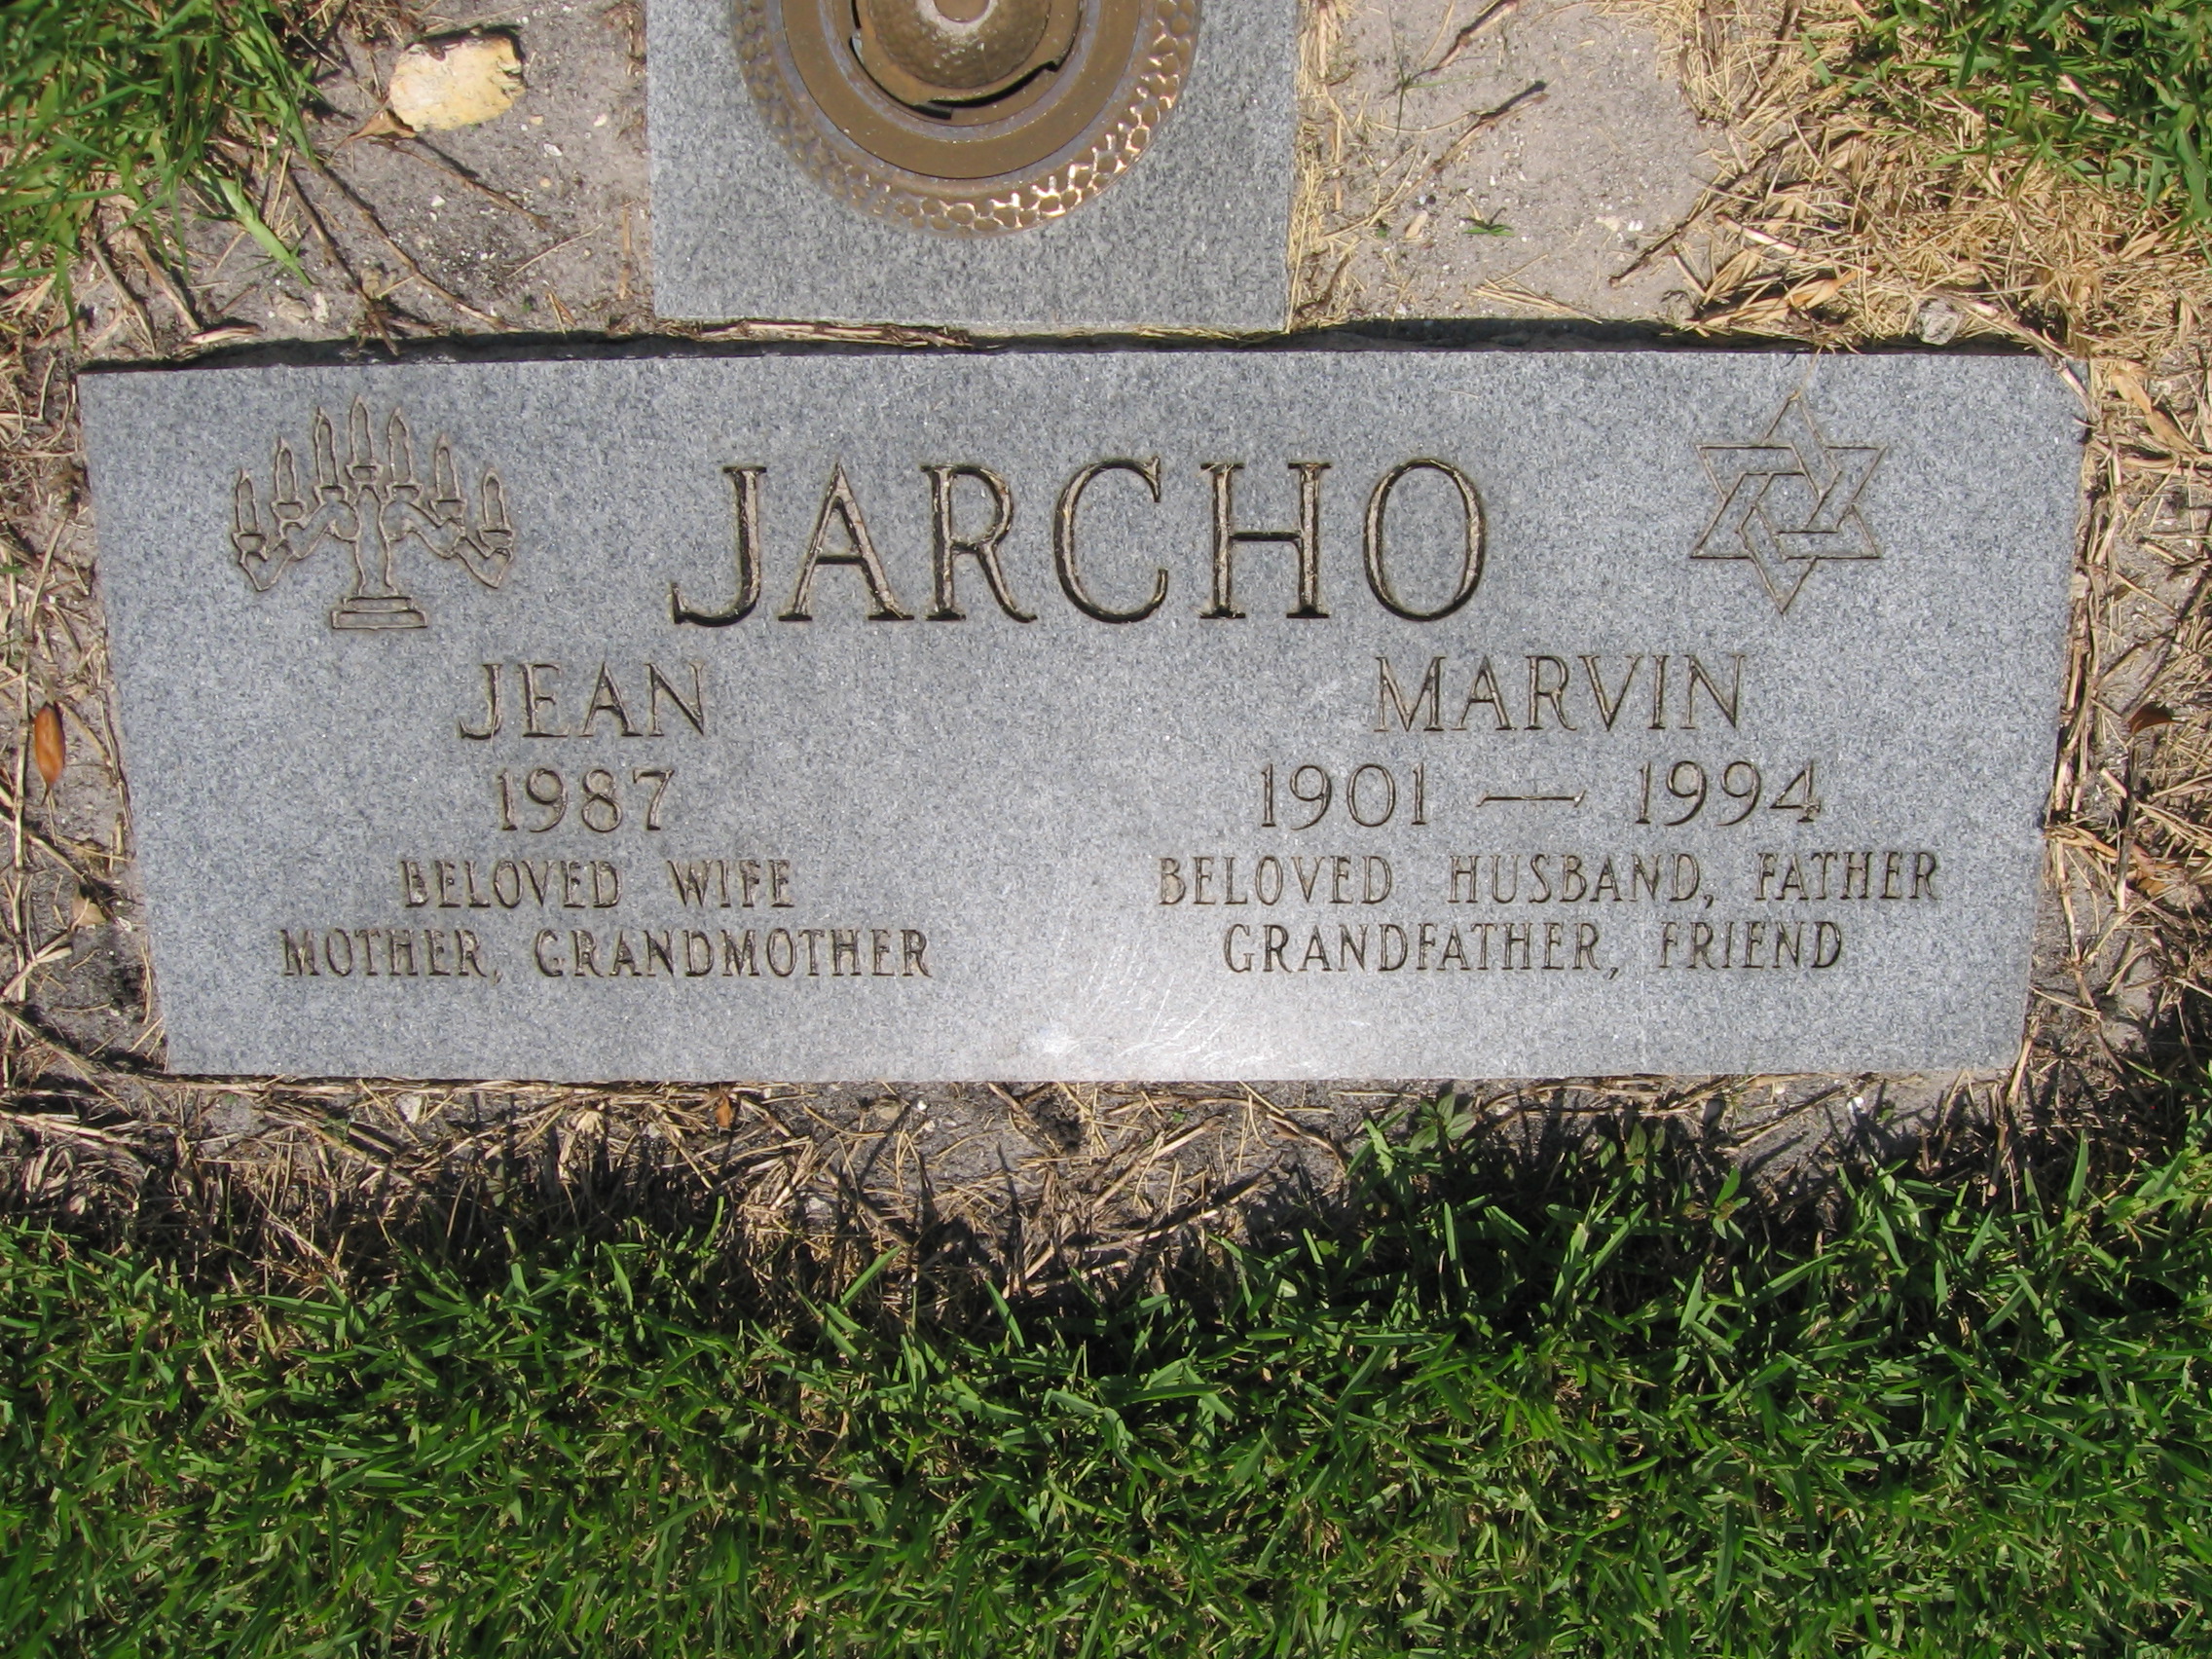 Jean Jarcho